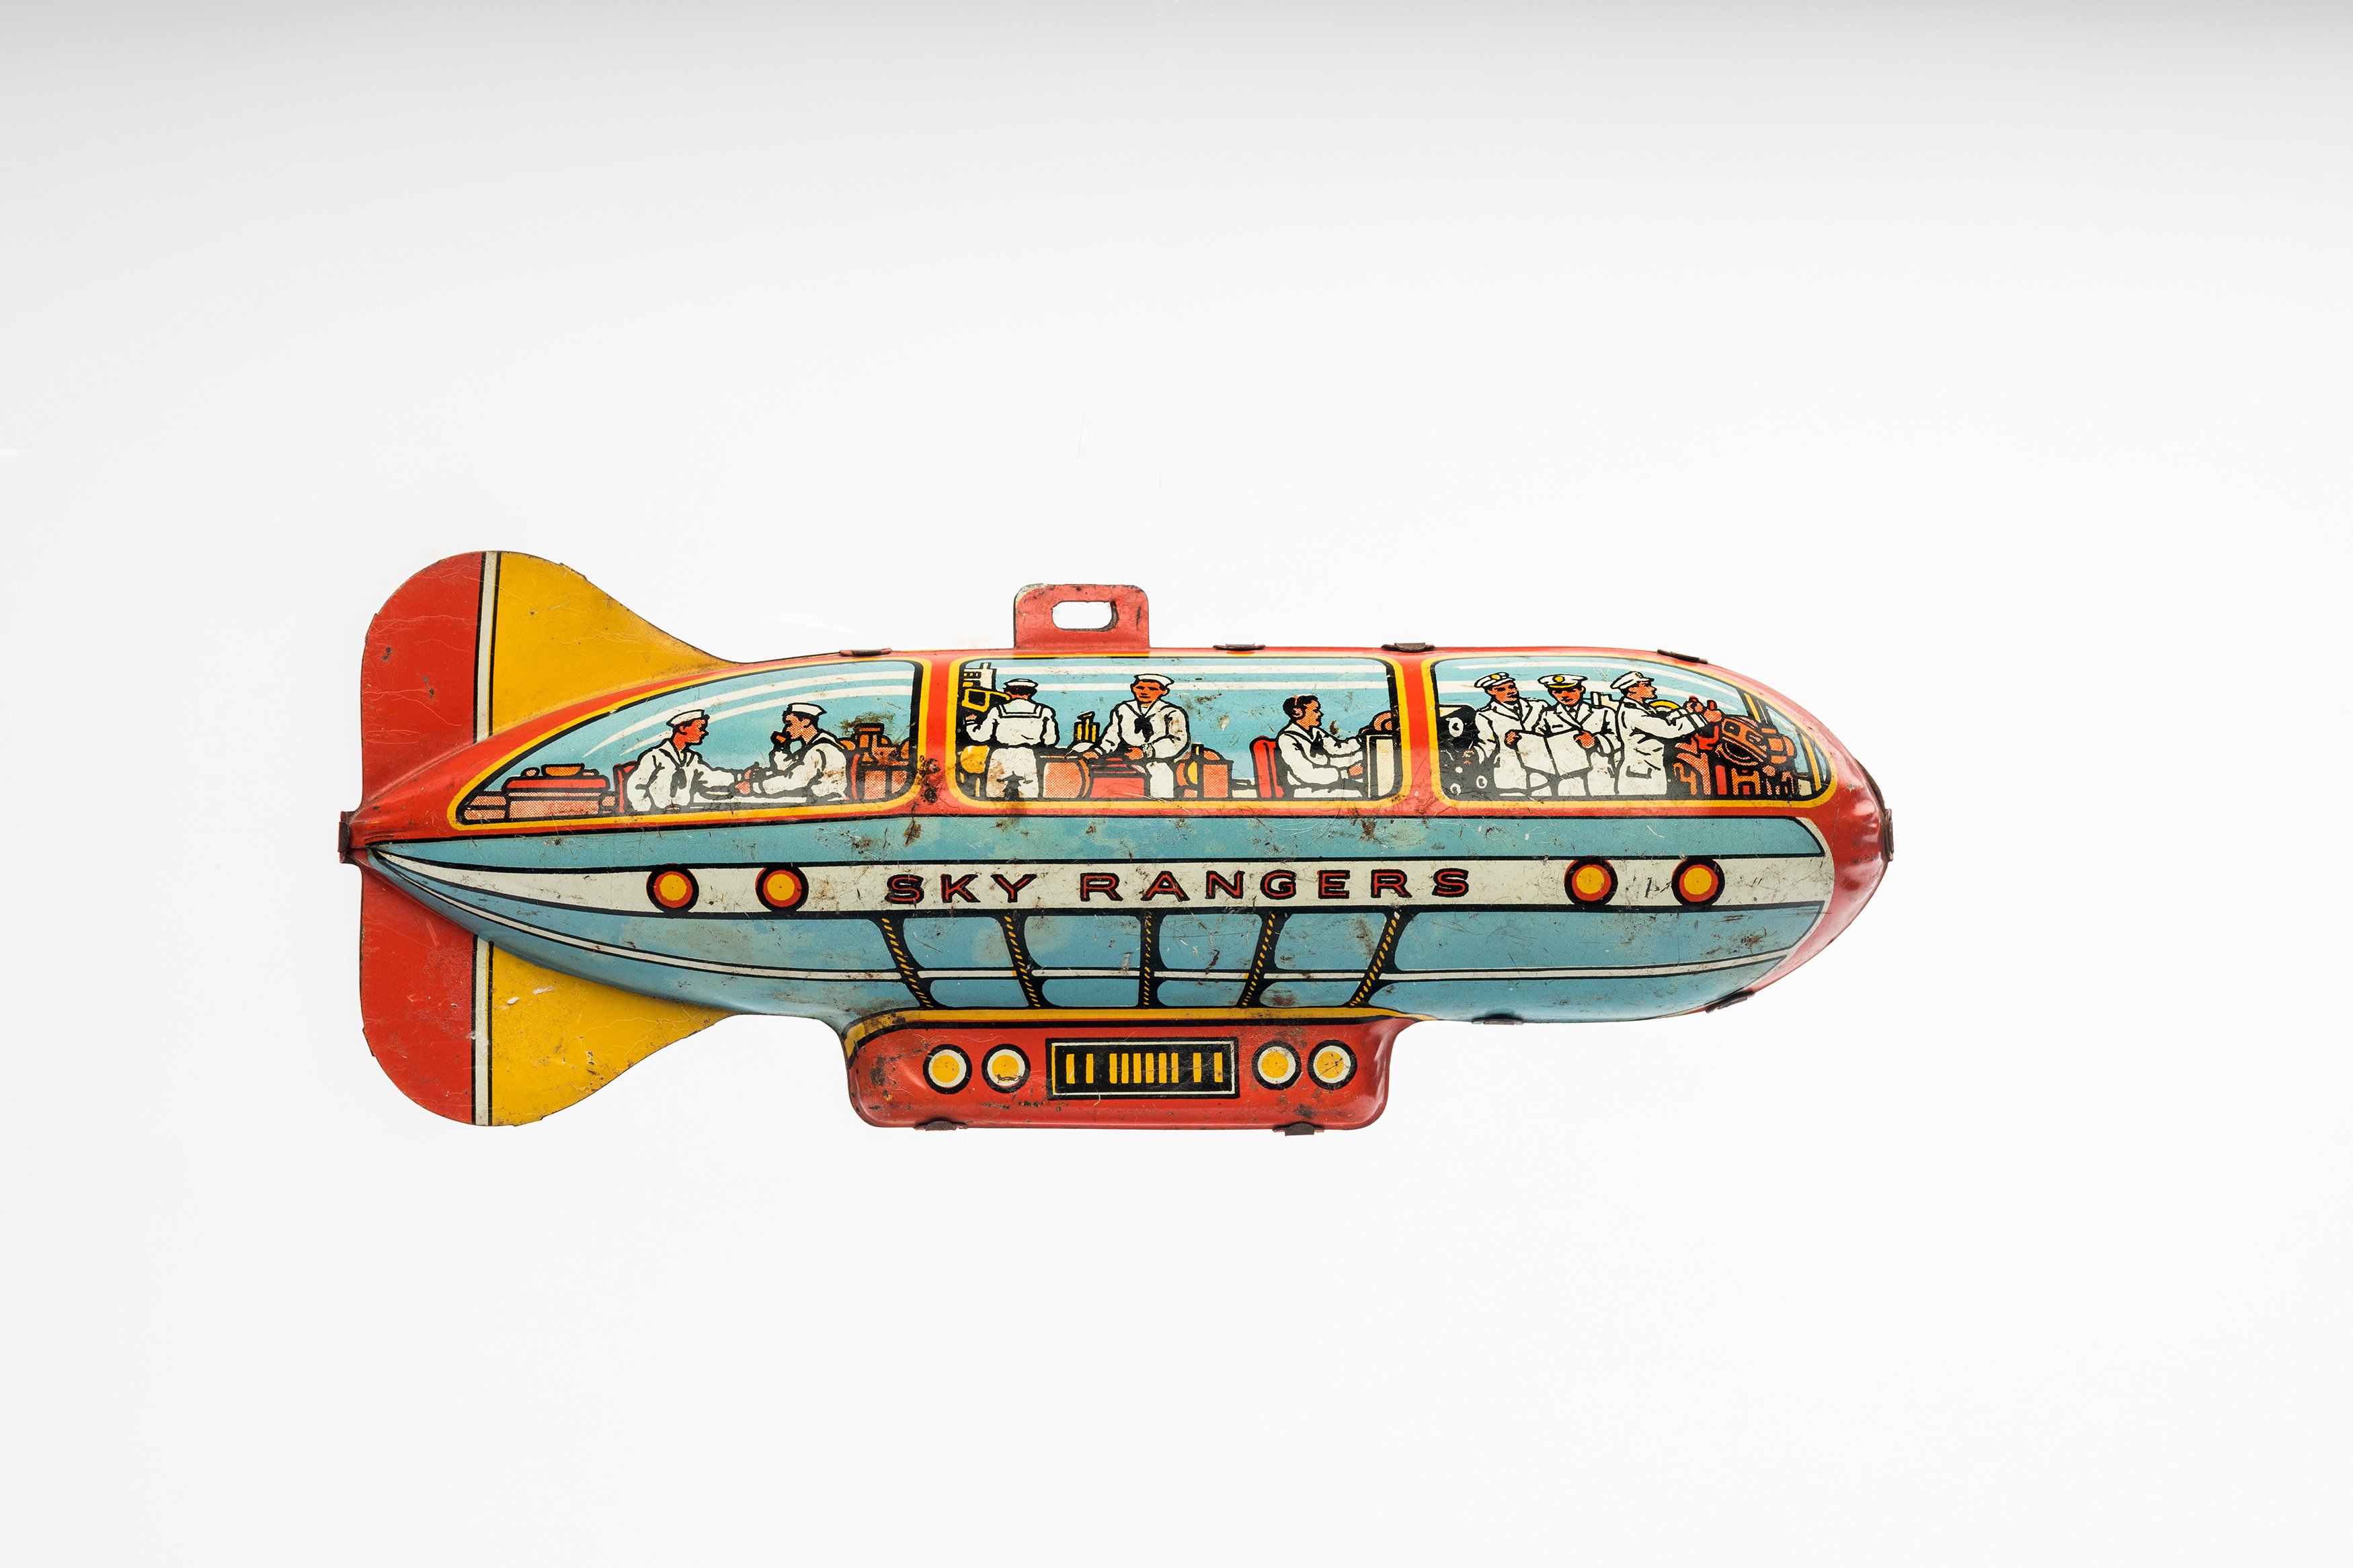 Blechspielzeug: Luftschiff "Sky Rangers" (Zeppelin Museum Friedrichshafen GmbH CC BY-ND)